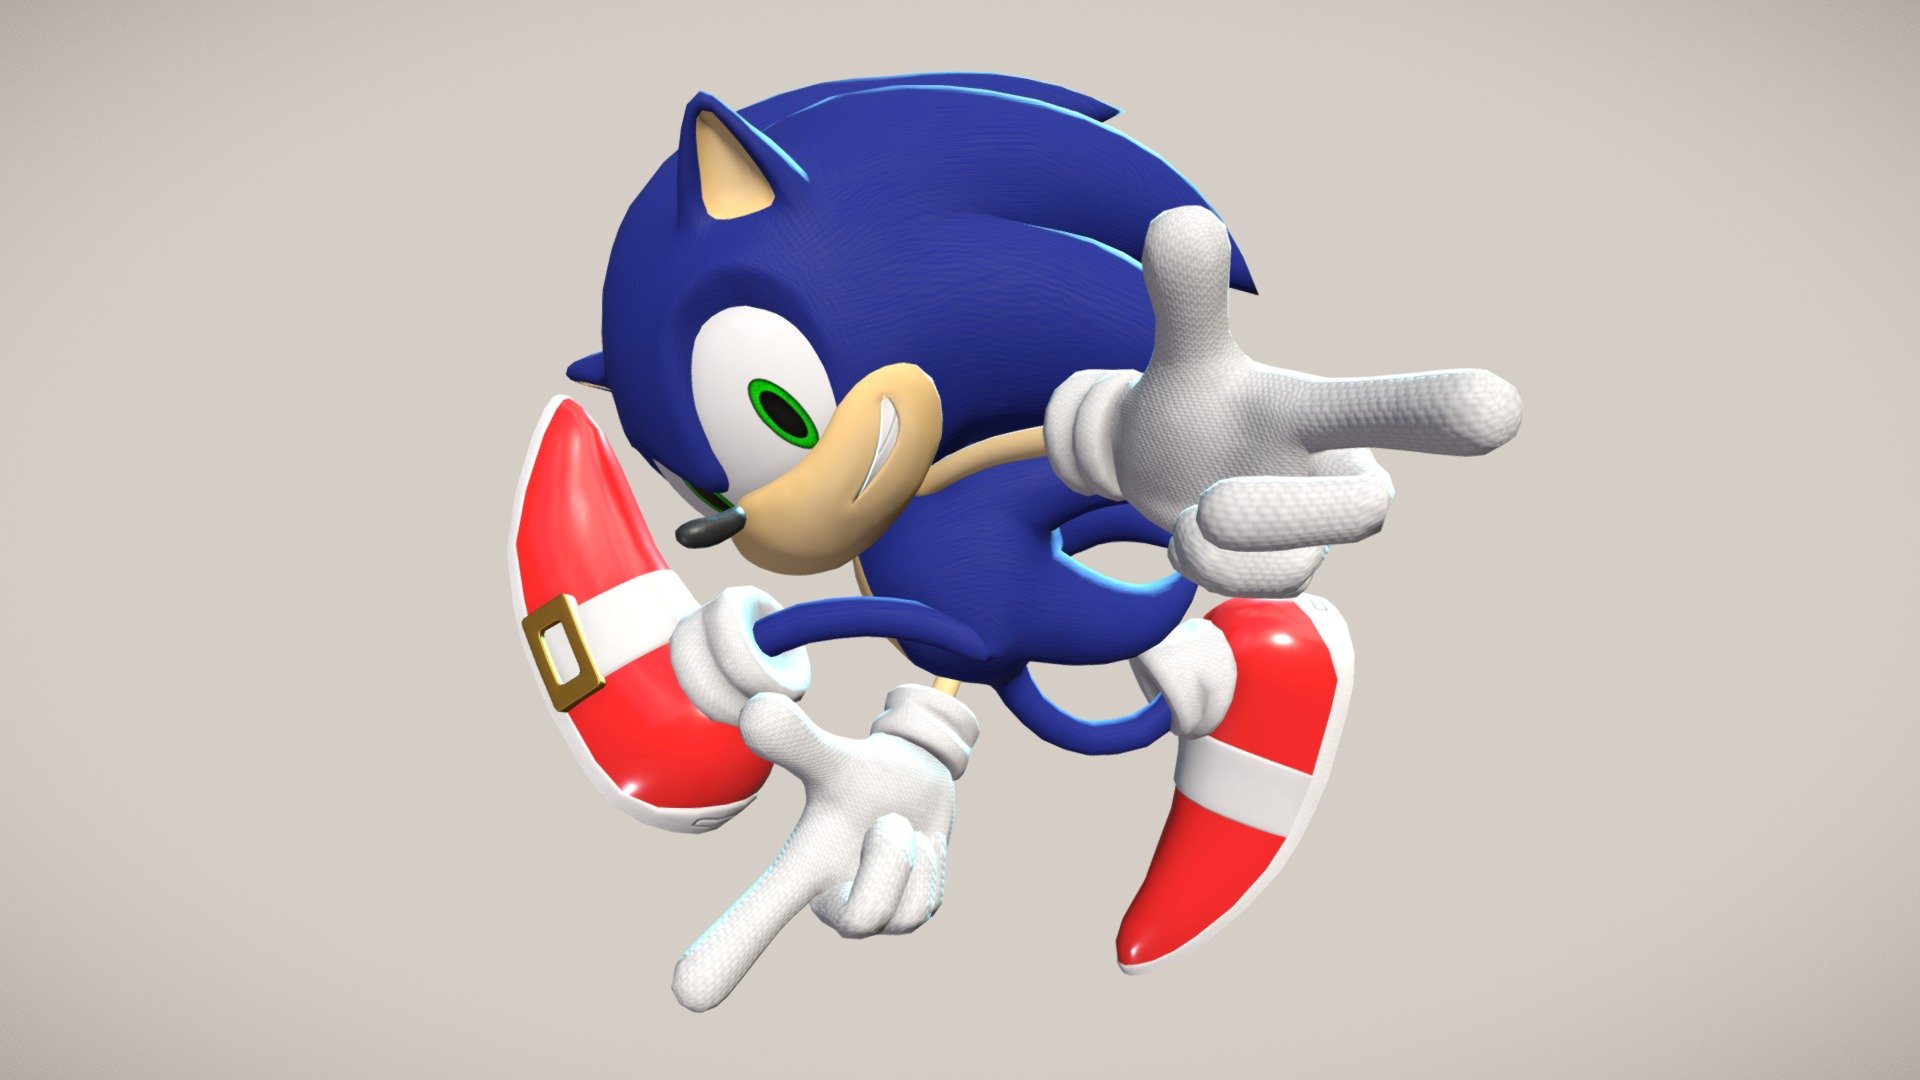 Dreamcast Sonic - 3D model by Kolunio [8b639b9] - Sketchfab